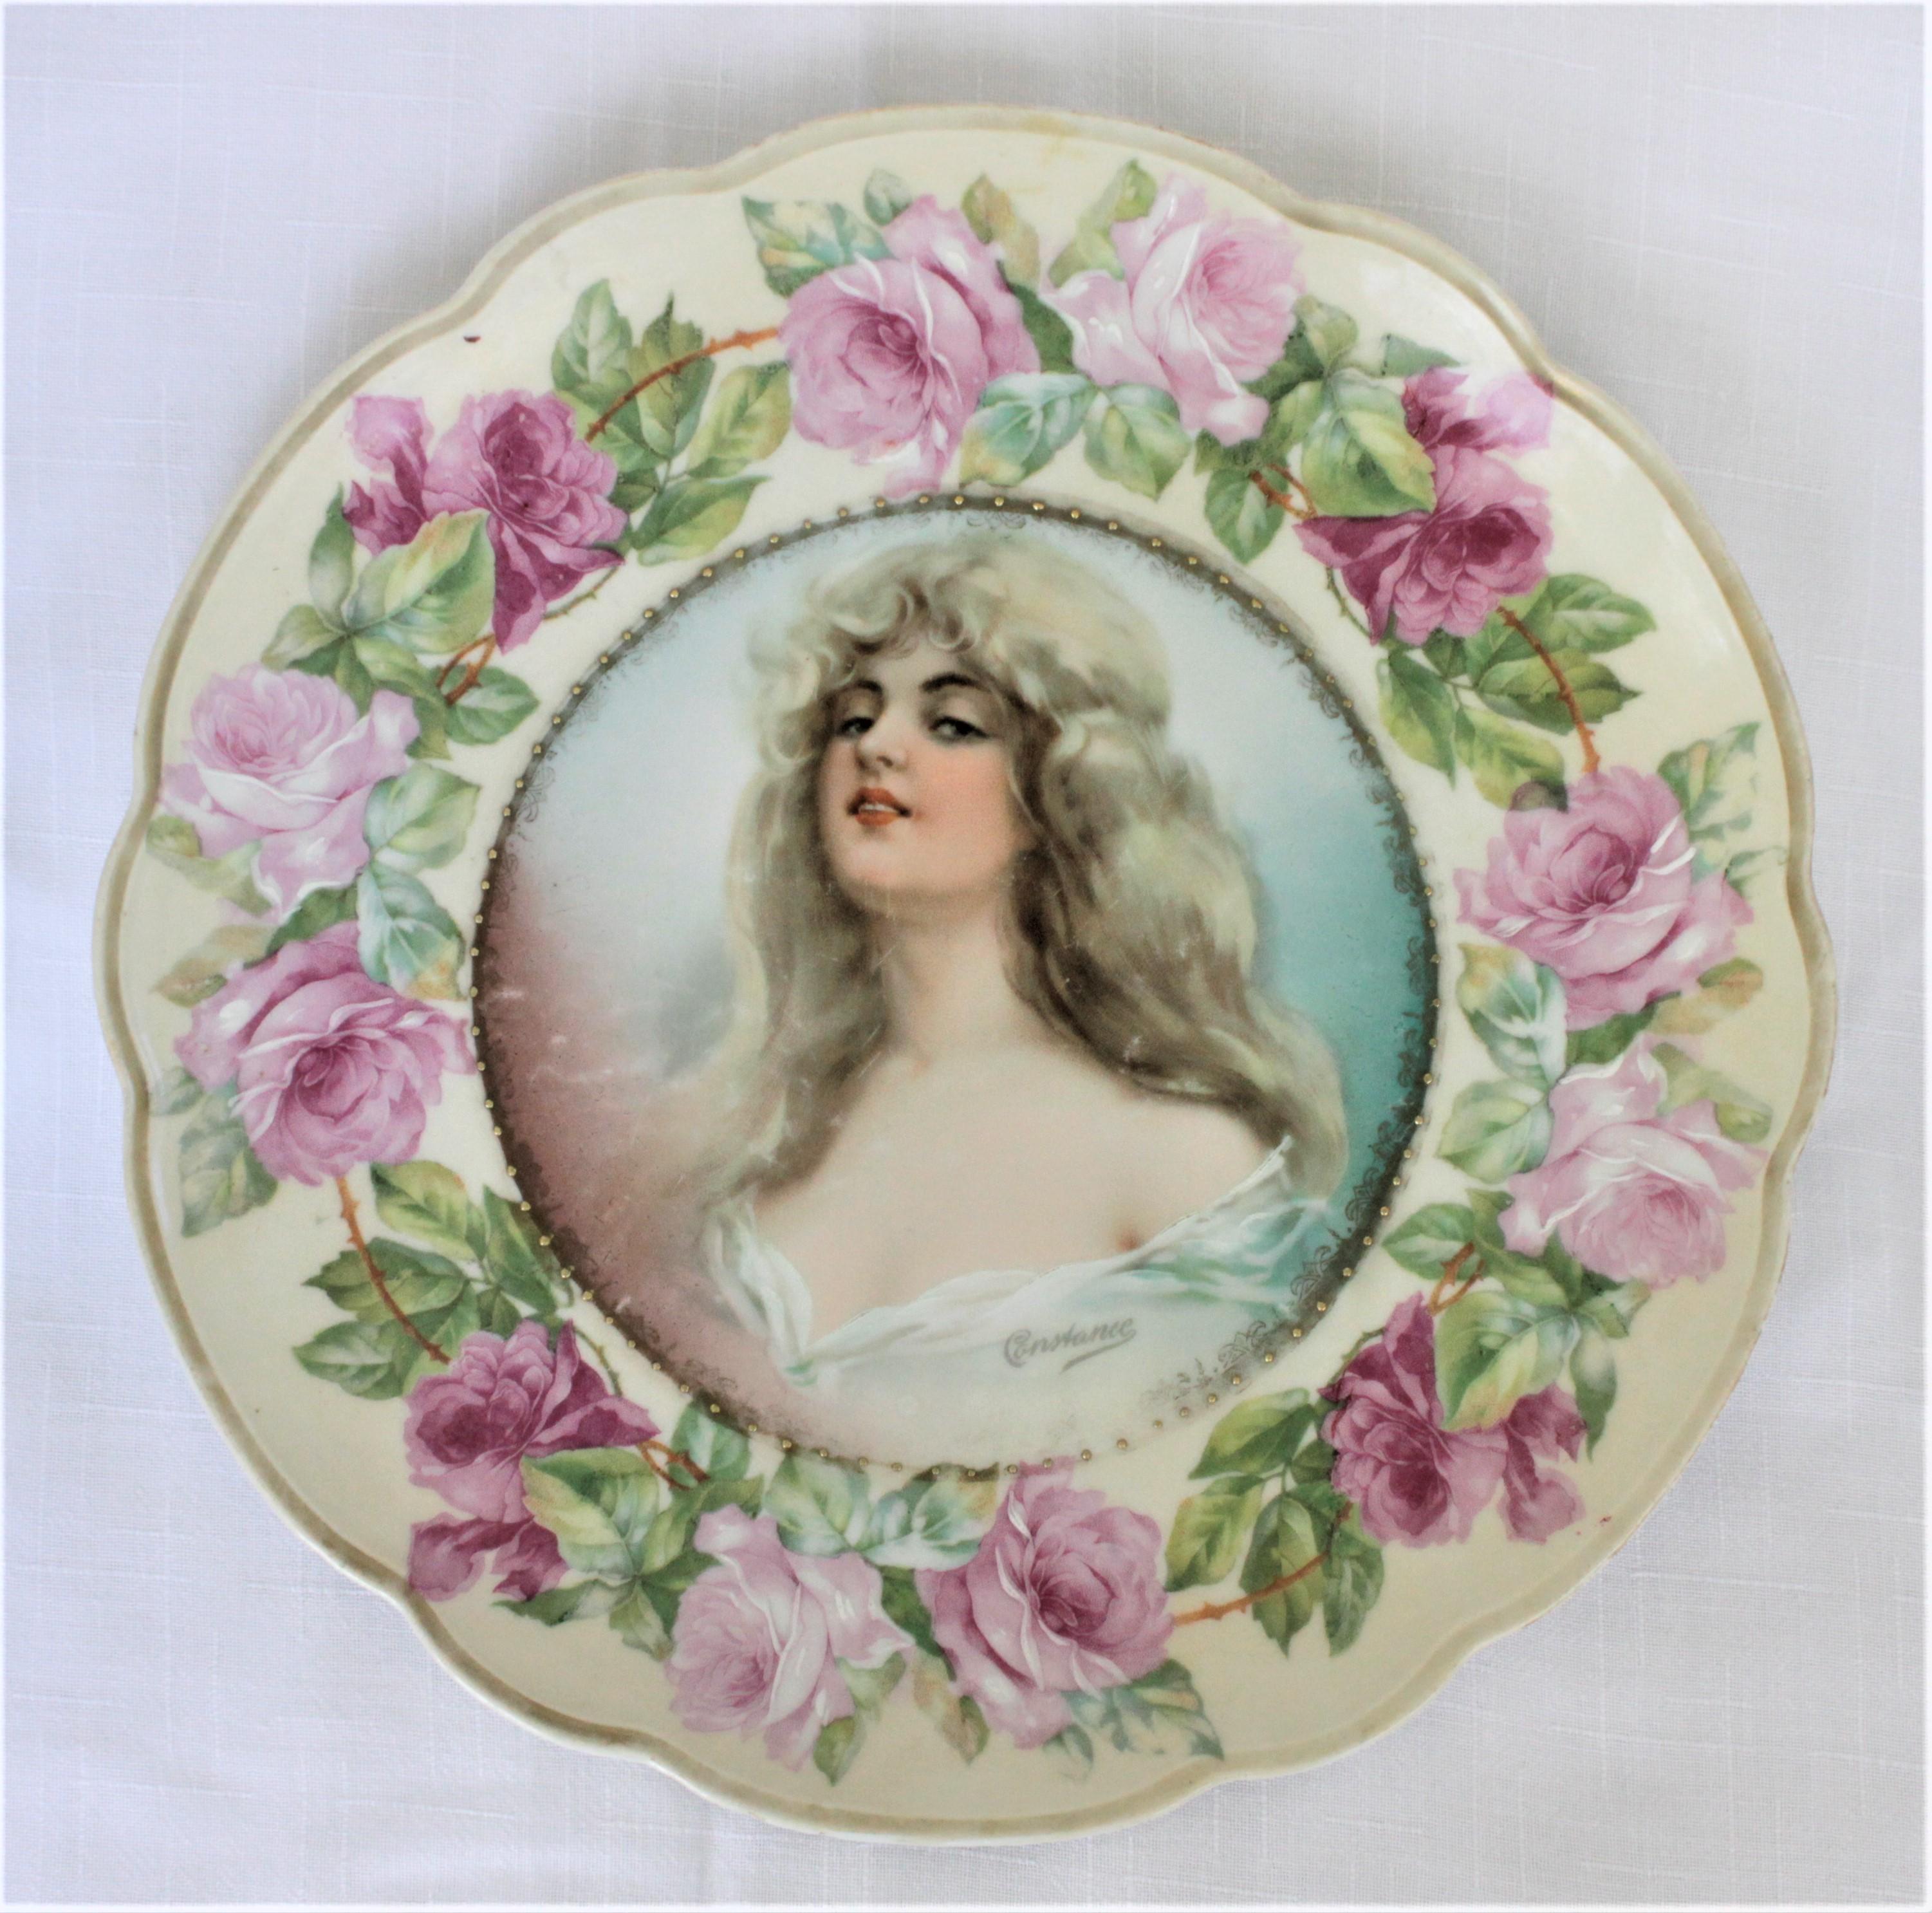 Antique Porcelain MZ Austria Portrait or Cabinet Plate signed 